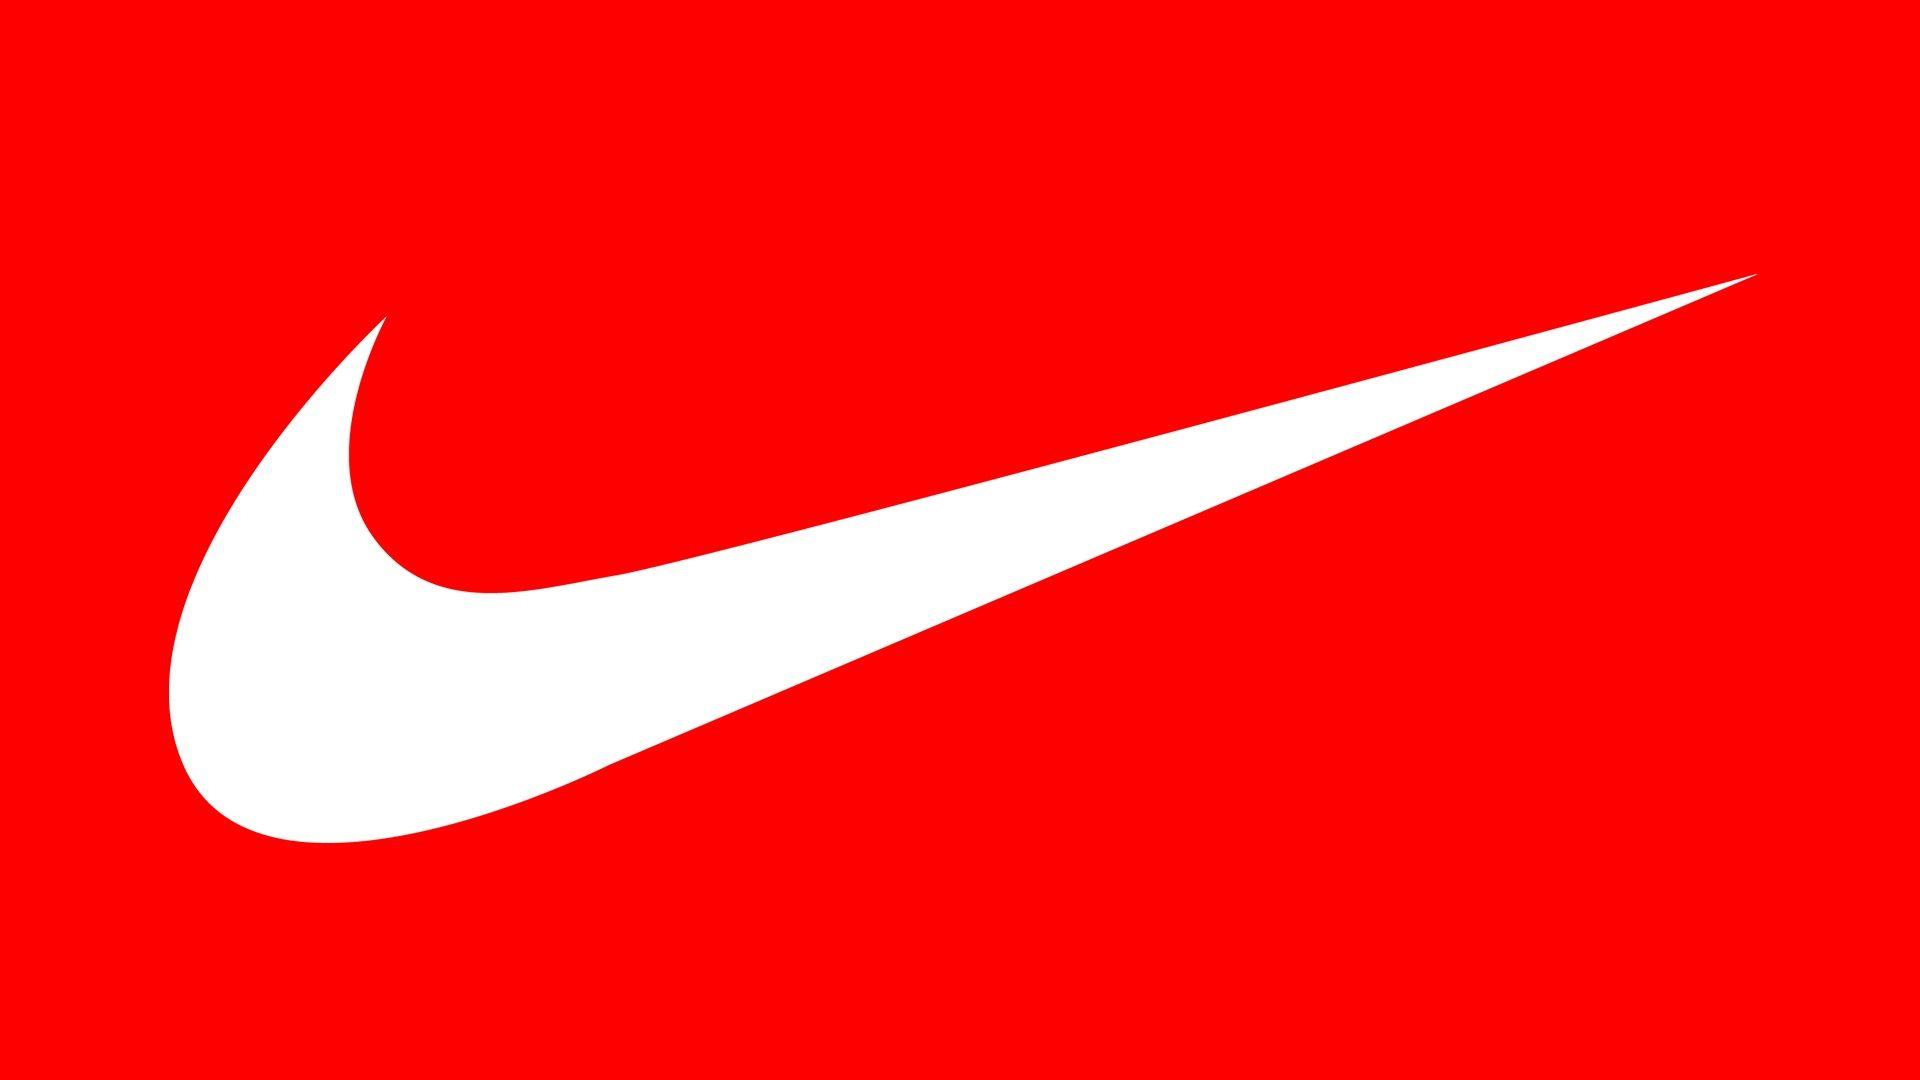 Red Nike SB Logo - wallpaper.wiki-Nike-Sb-Logo-Pictures-PIC-WPE006245 | wallpaper.wiki